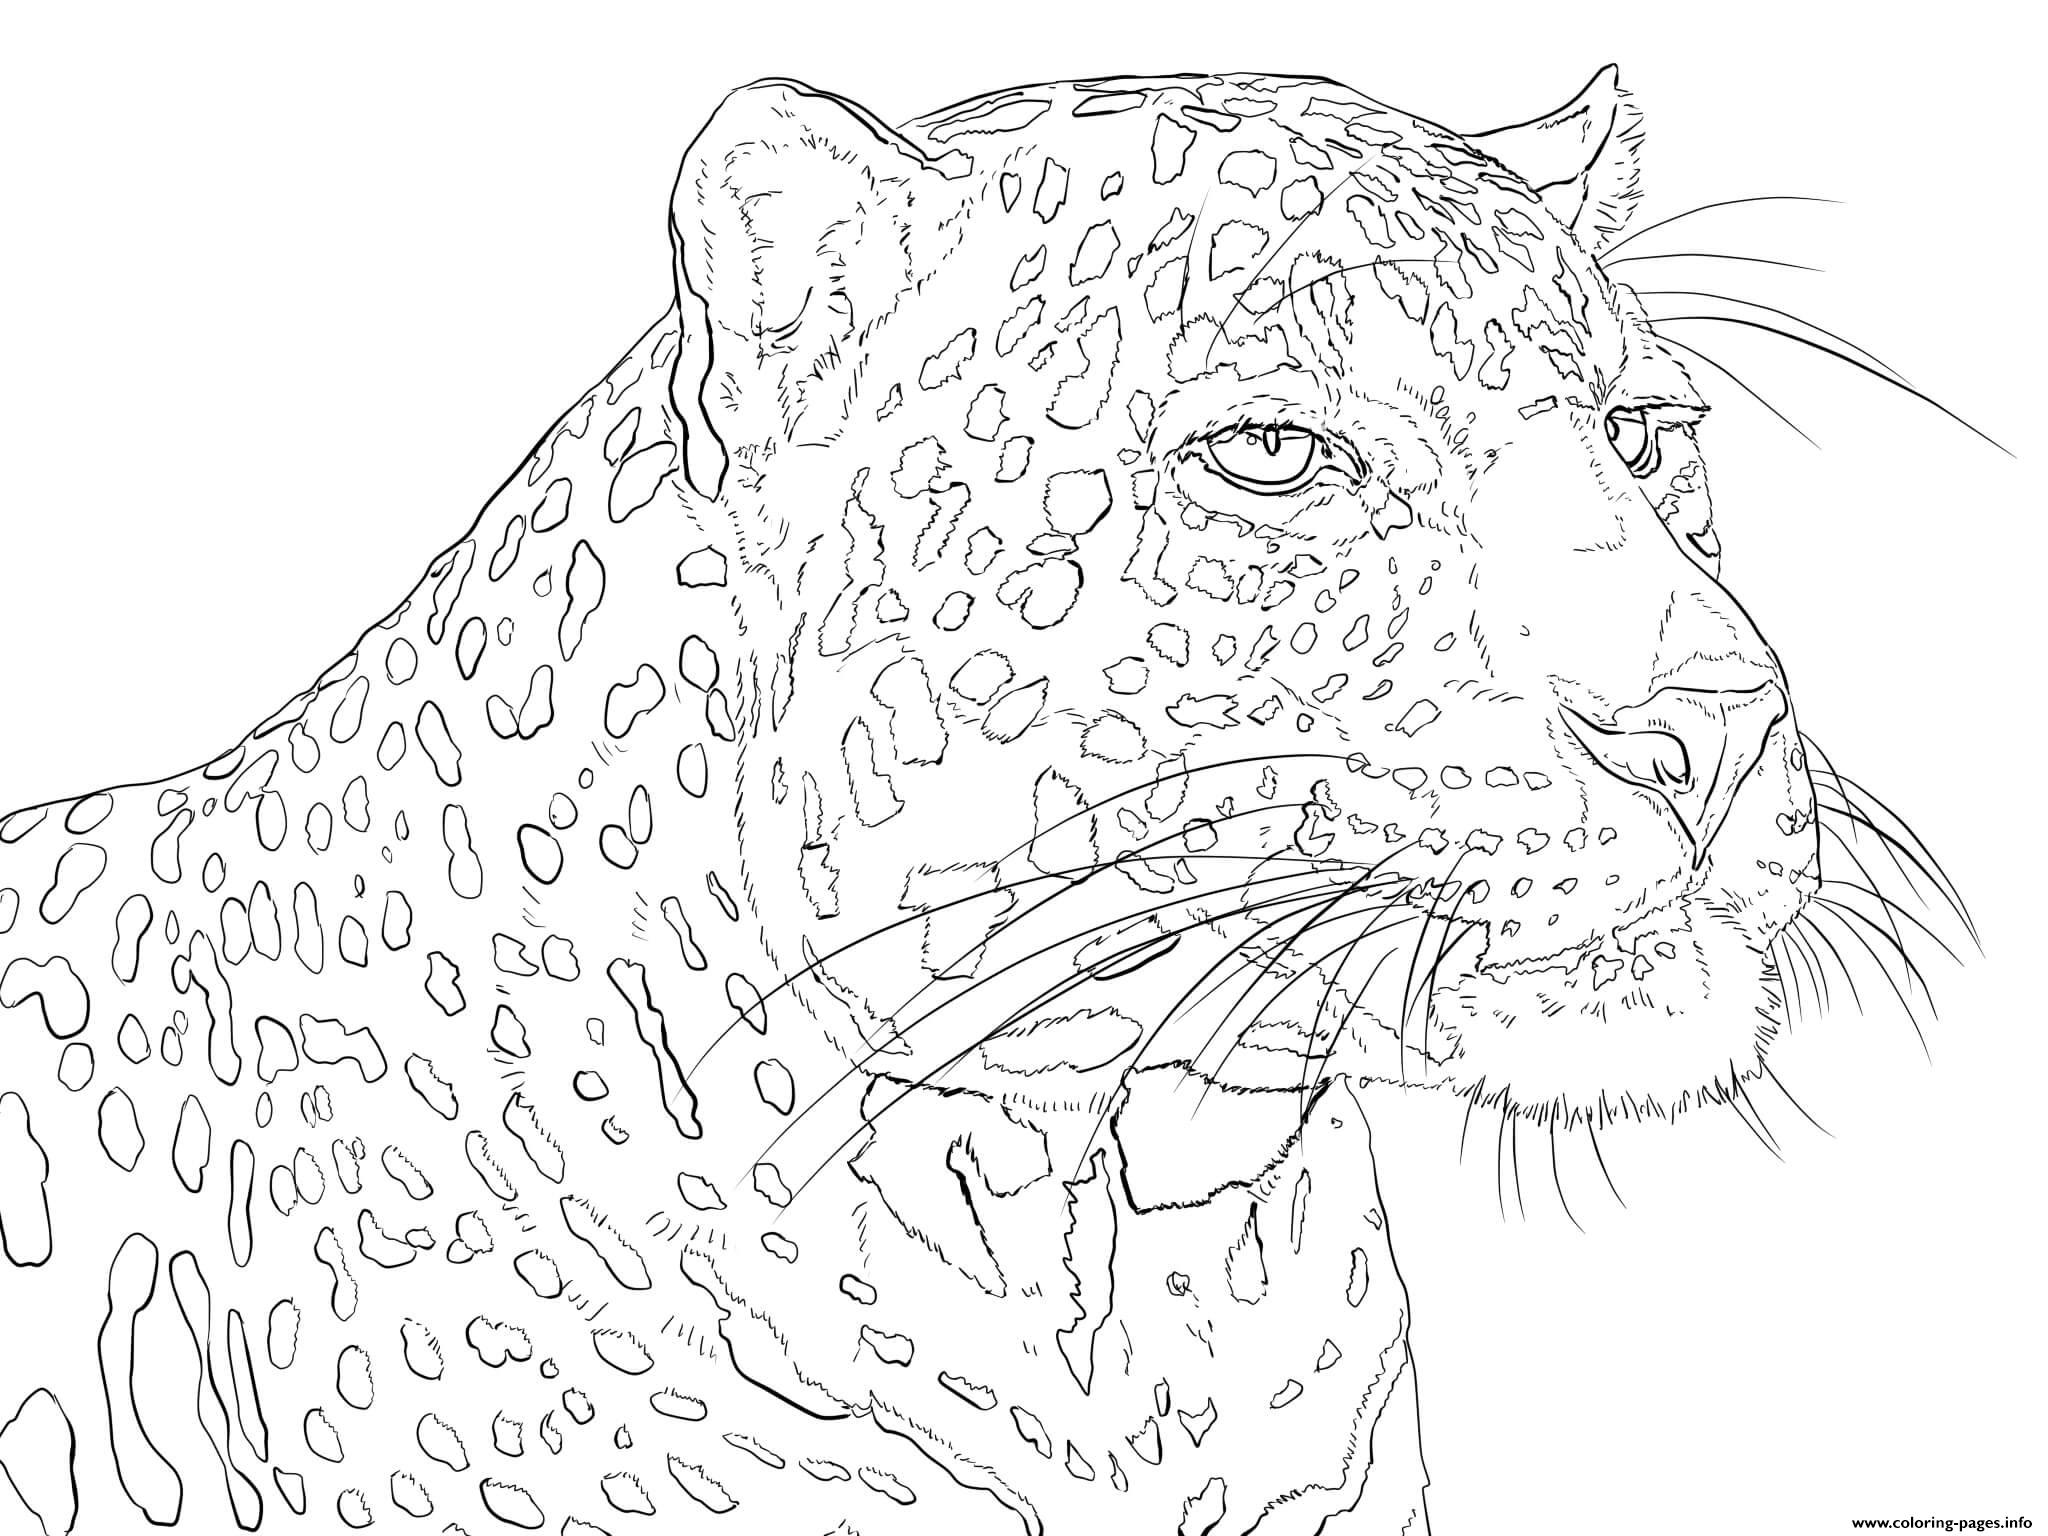 African Leopard Pardus coloring pages